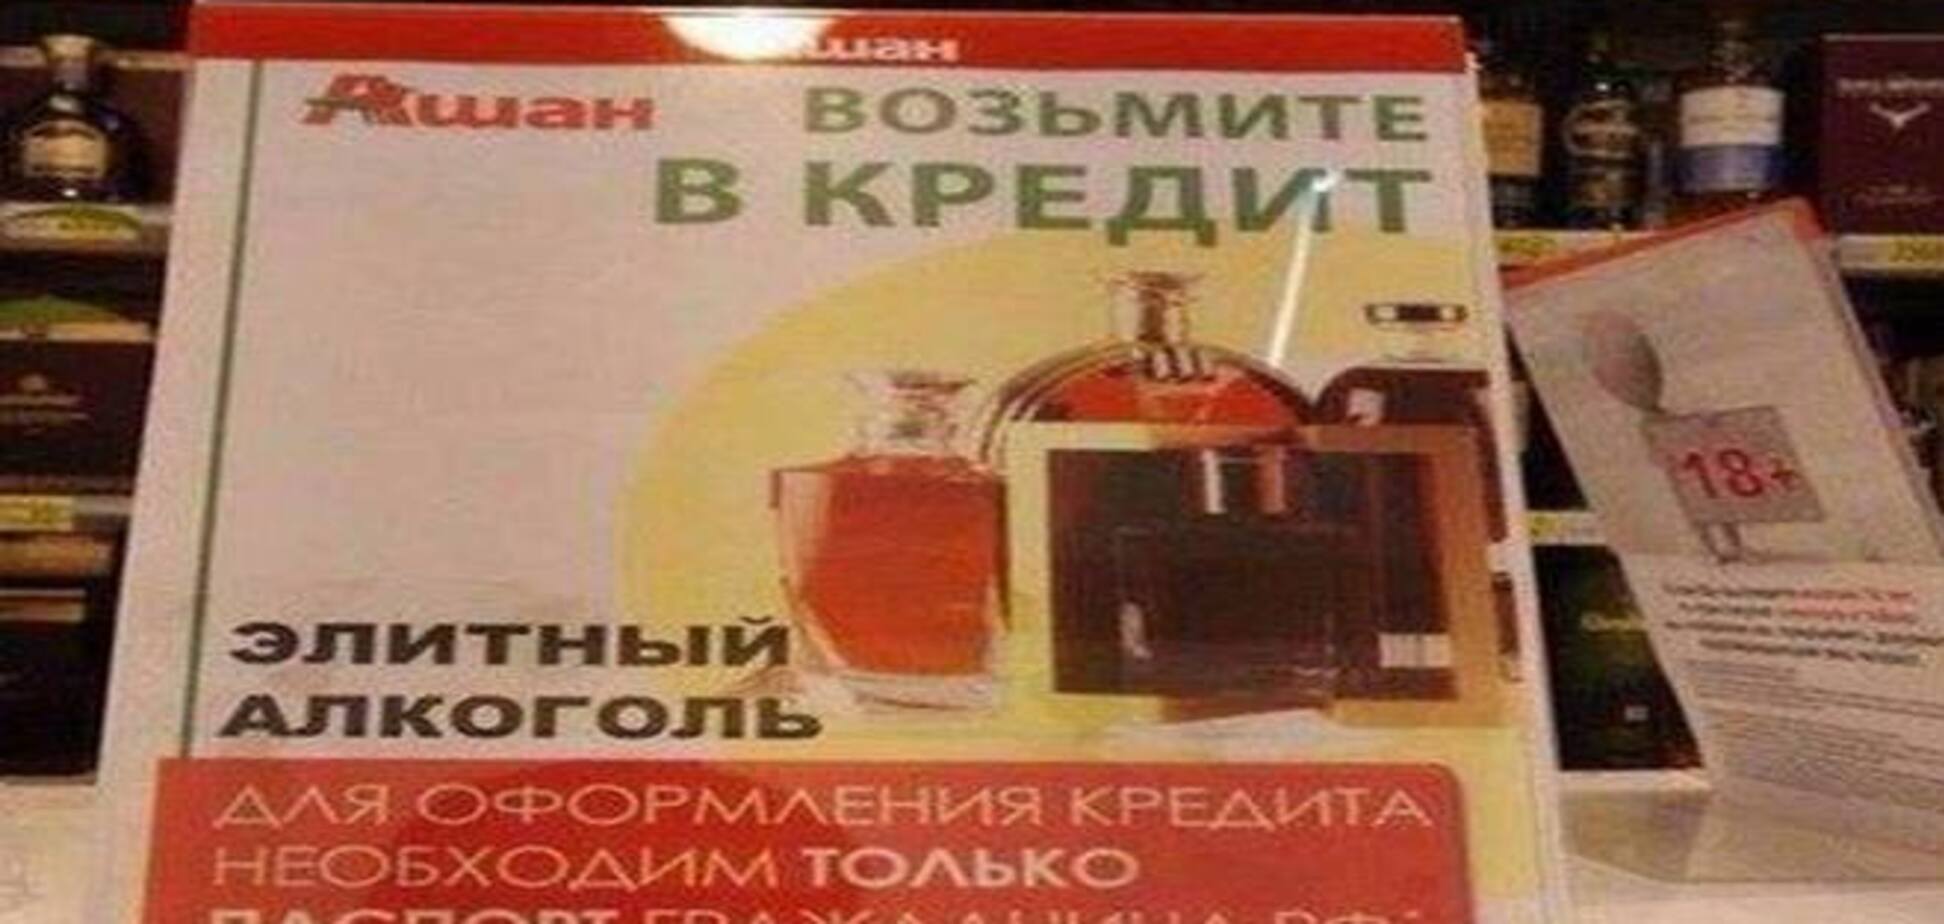 Кризис не помеха: в России предлагают выпивать в кредит. Фотофакт